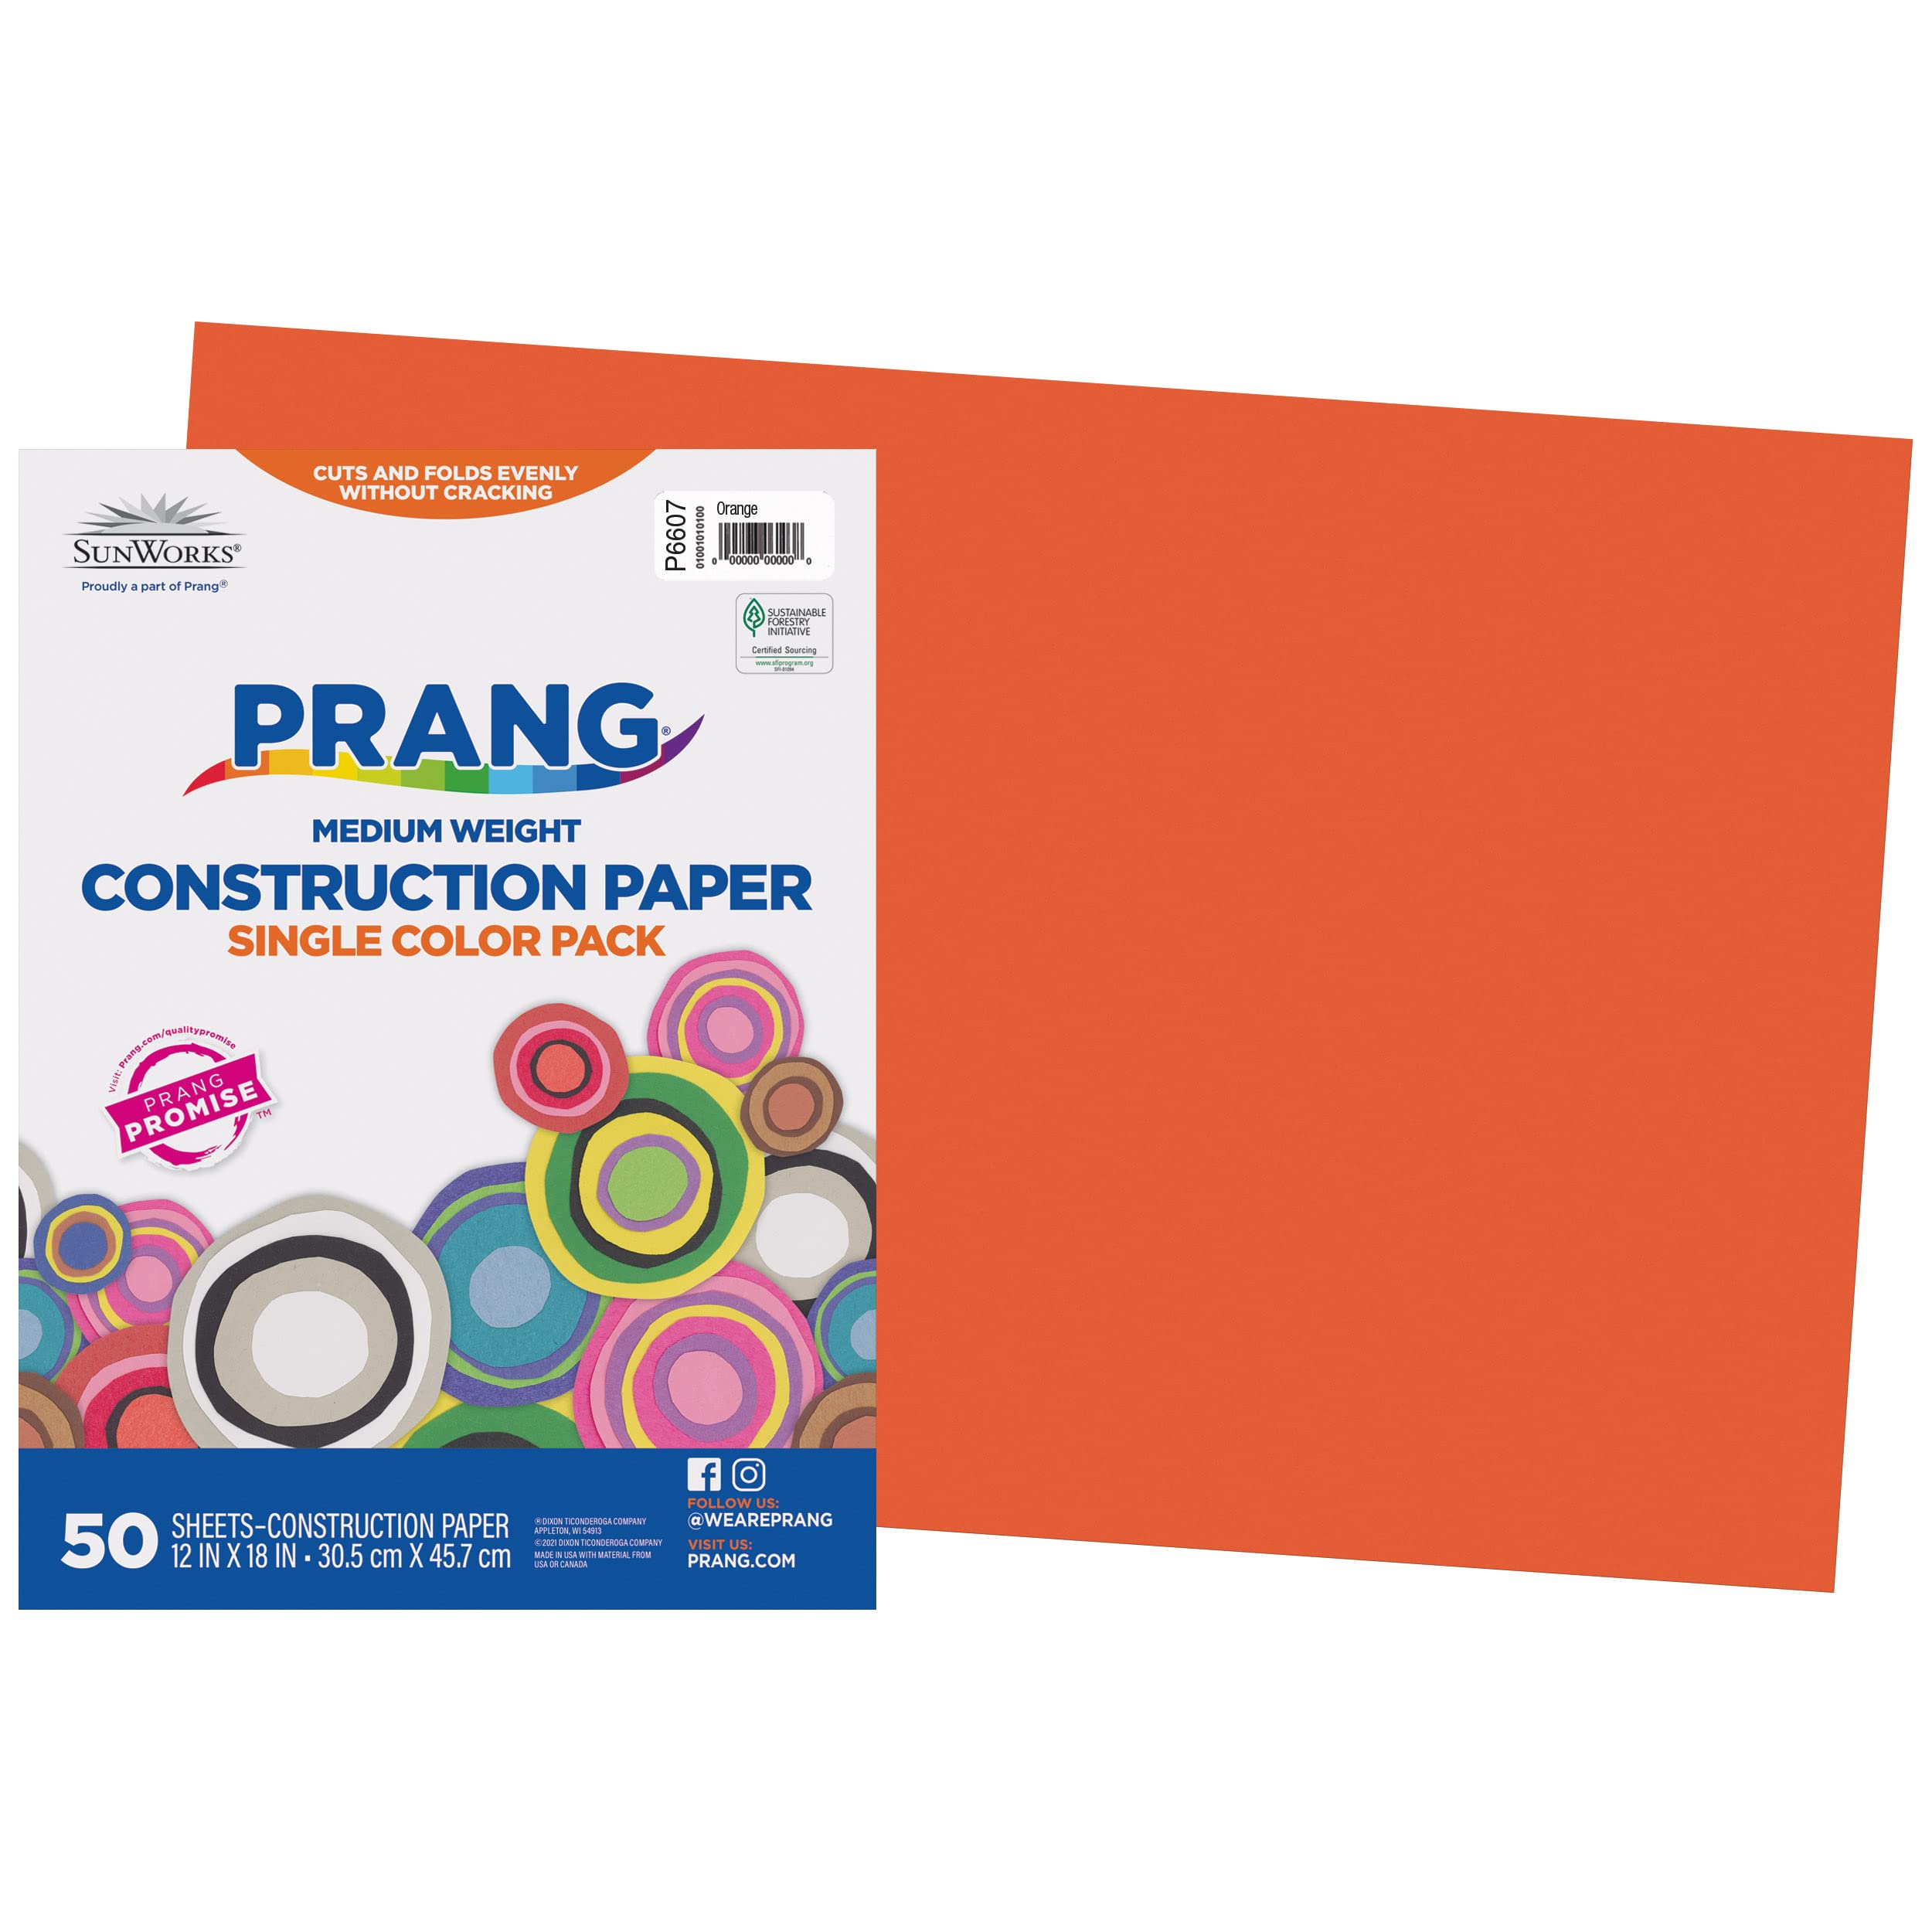 Prang (Formerly SunWorks) Construction Paper, Orange, 12